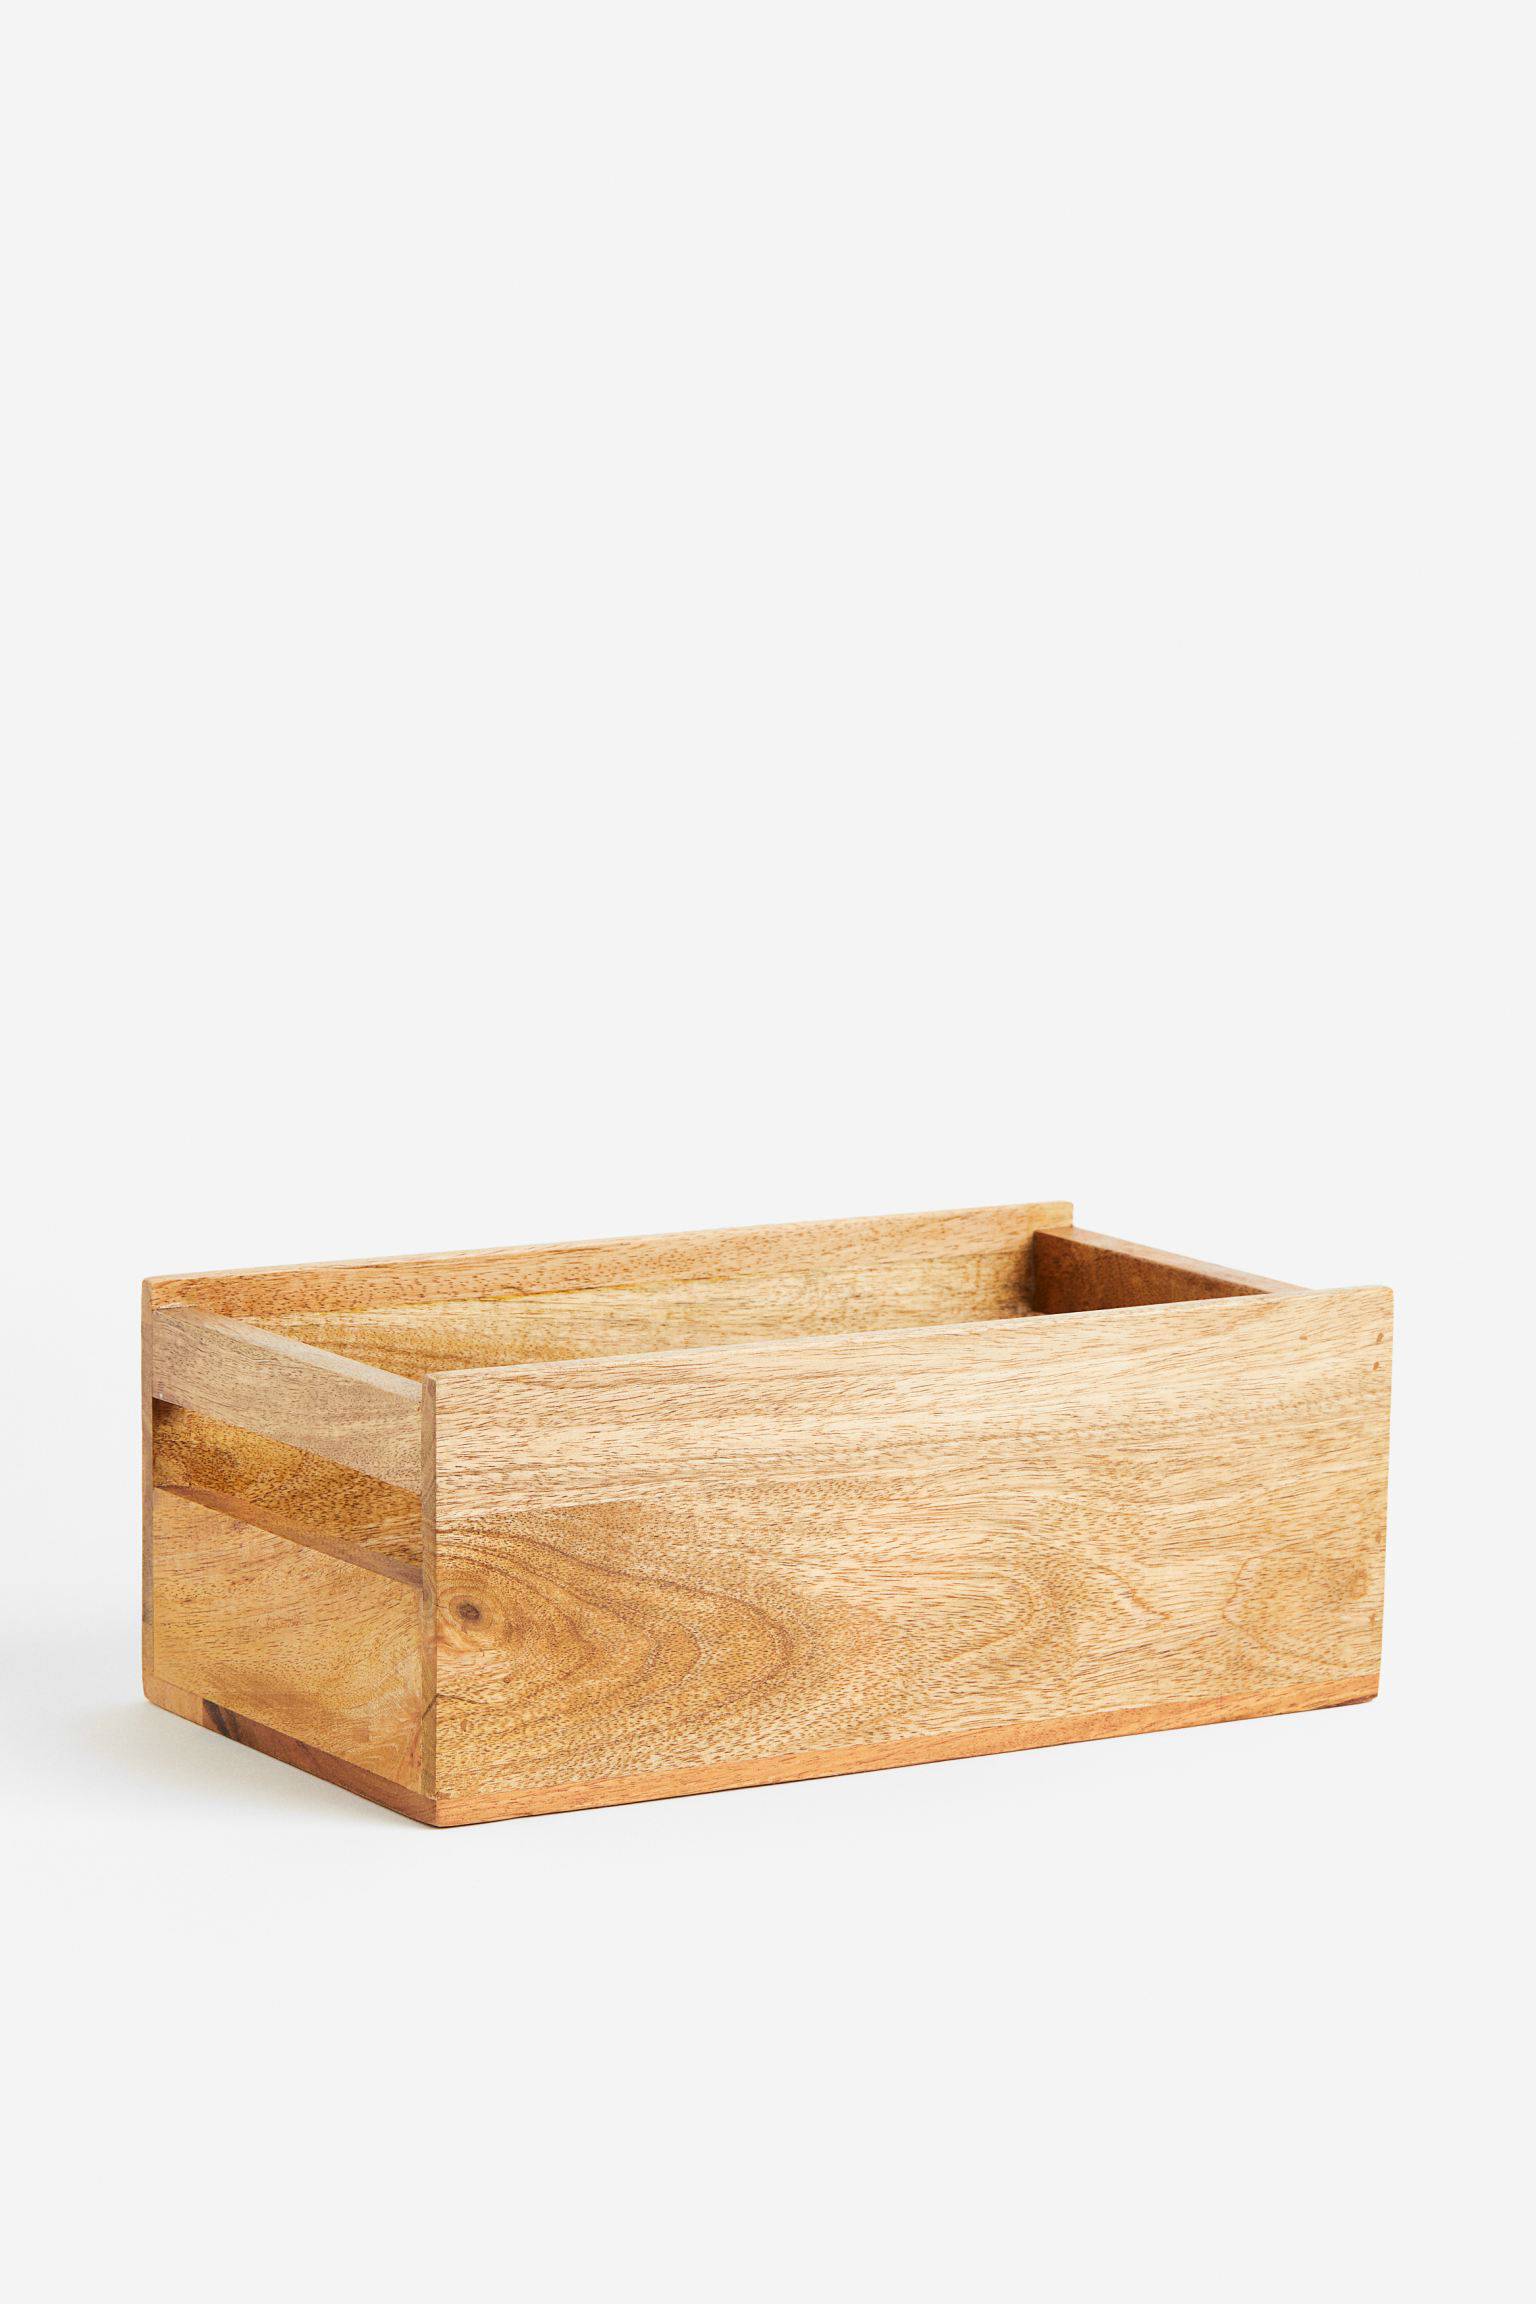 Caja de madera con asas en los laterales.